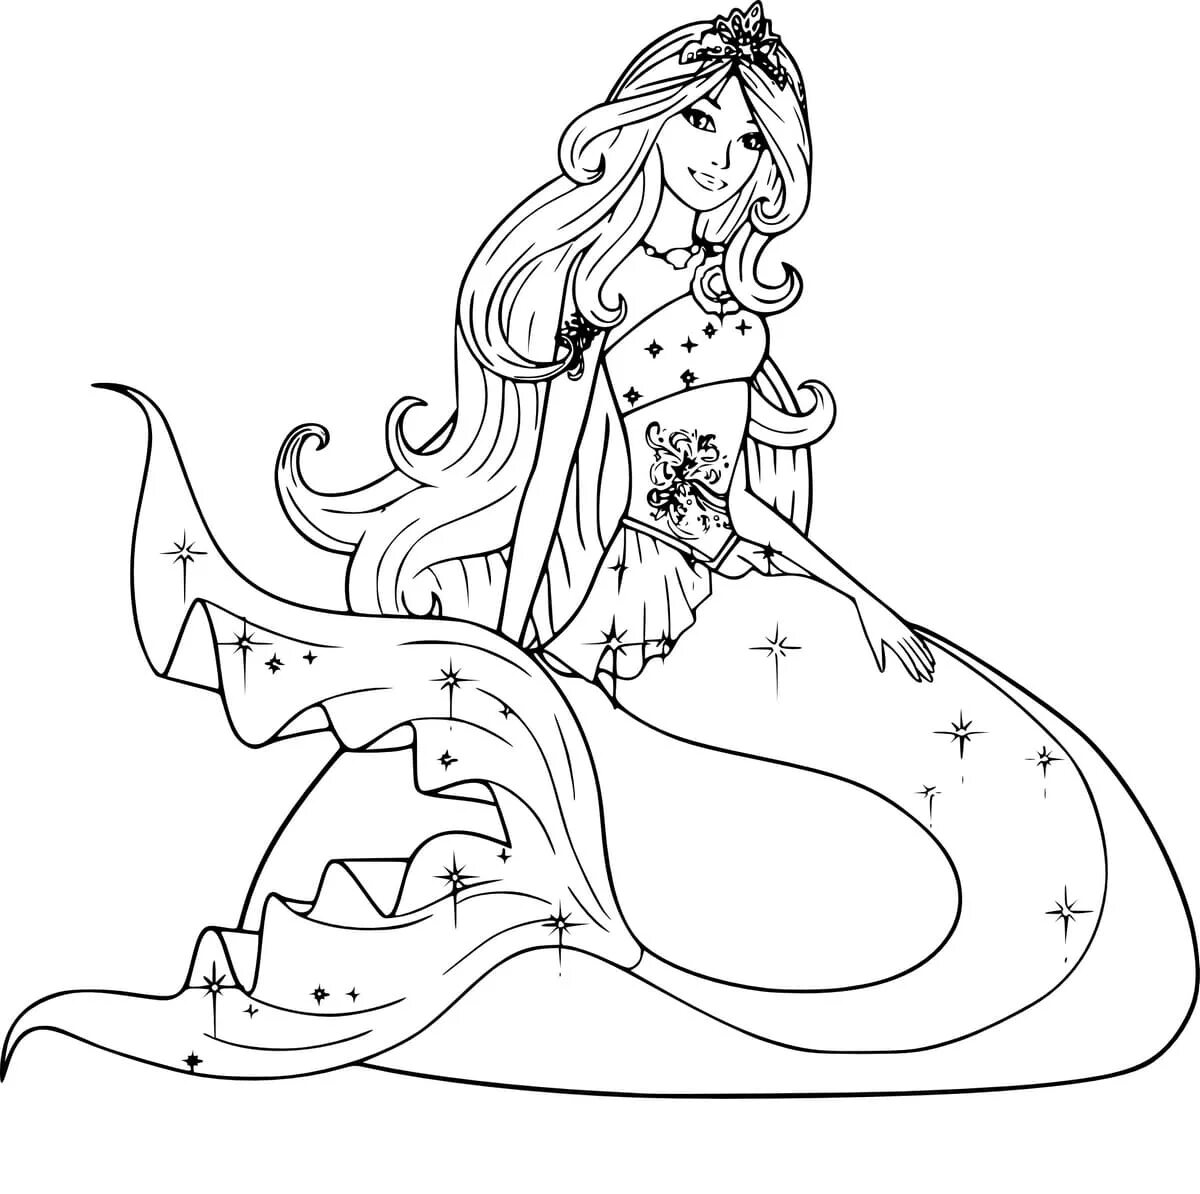 Mermaid queen #5